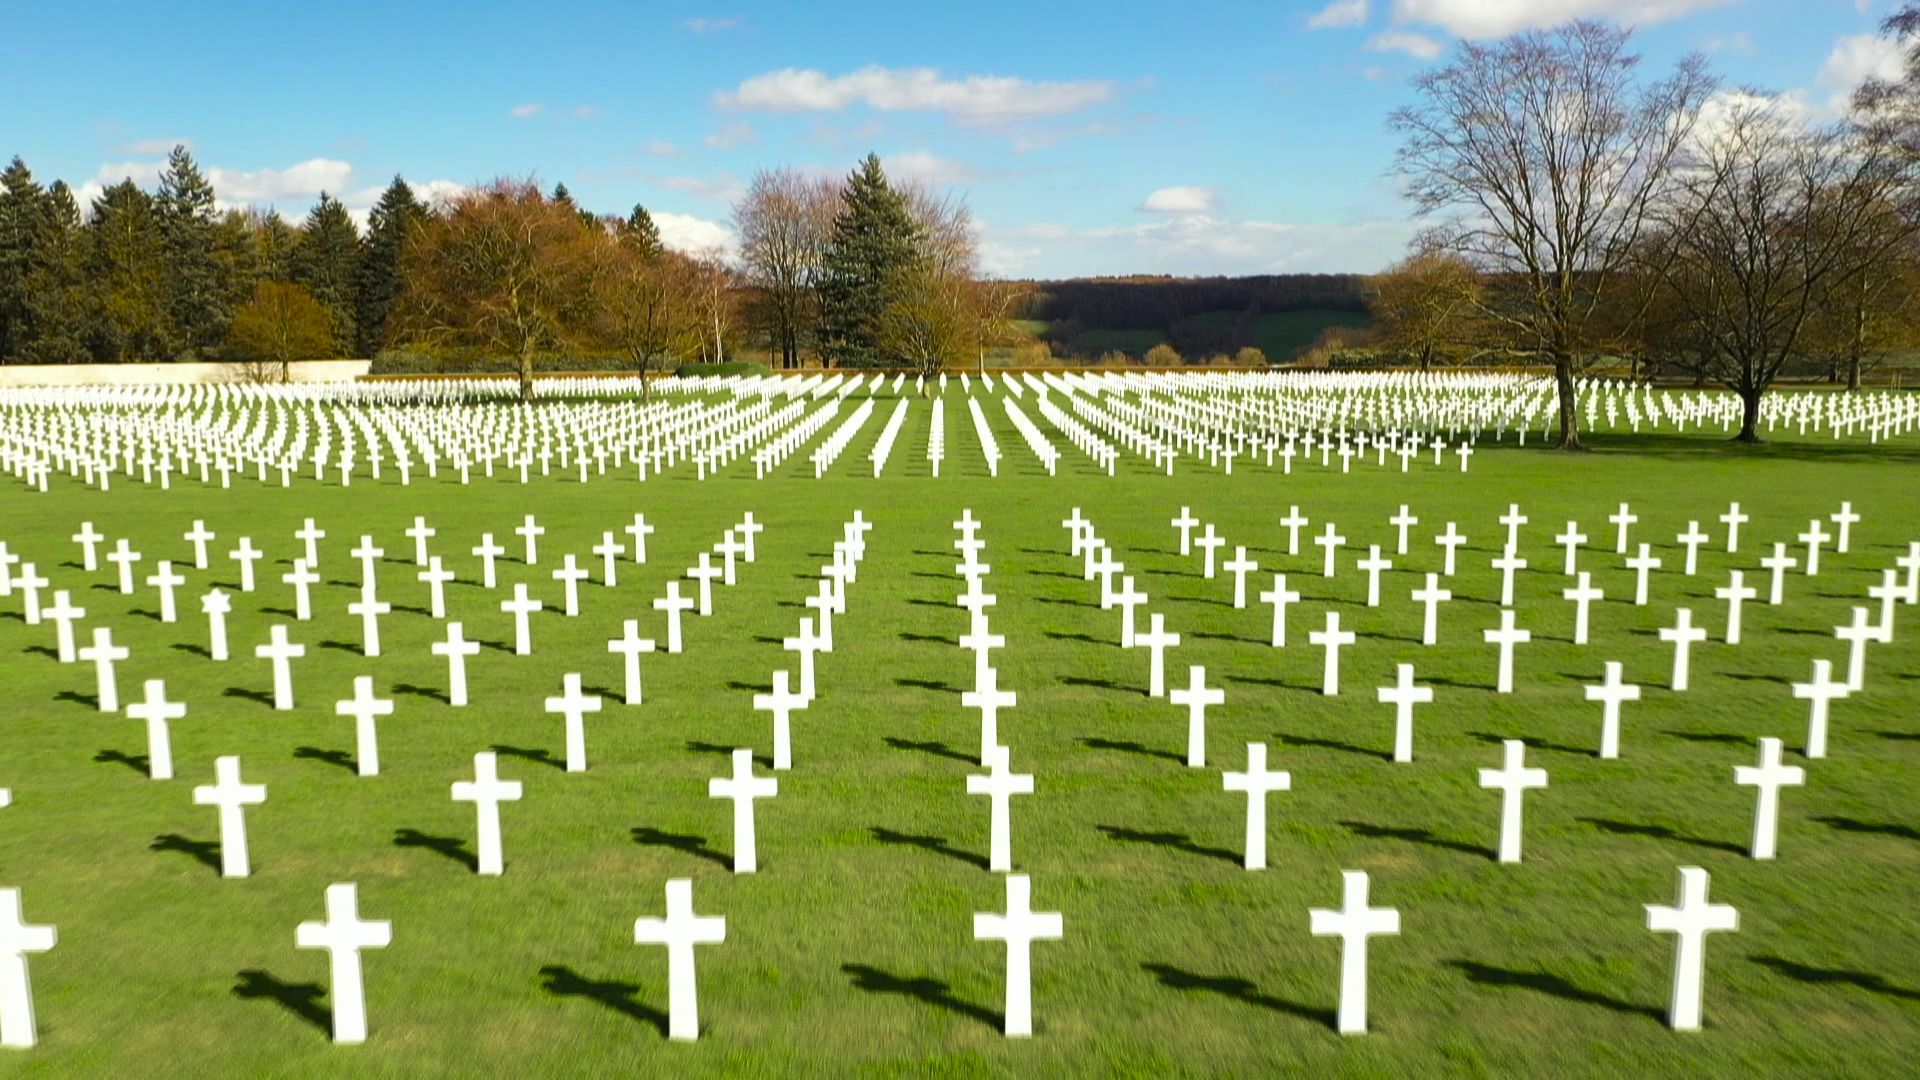 8000 soldats américains reposent ici. le cimetière d’Henri Chapelle conserve la mémoire de ces jeunes soldats américains tombés au combat. La plupart appartiennent à la première armée, celle qui a libéré la région le 11 septembre 1944.